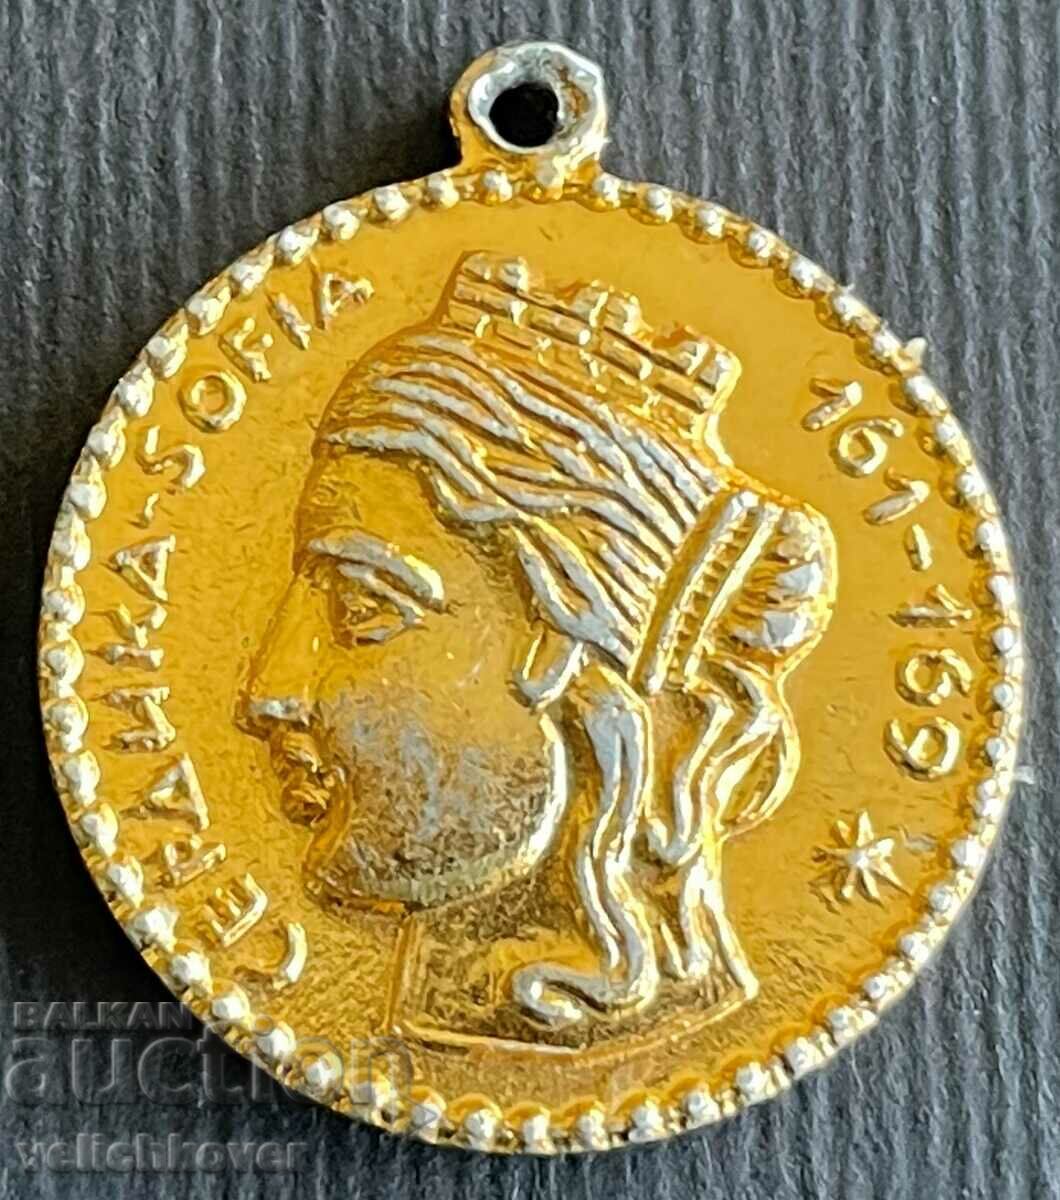 32760 Βουλγαρία μετάλλιο 18ος αιώνας Σοφία Σέρδικα 169-1969.